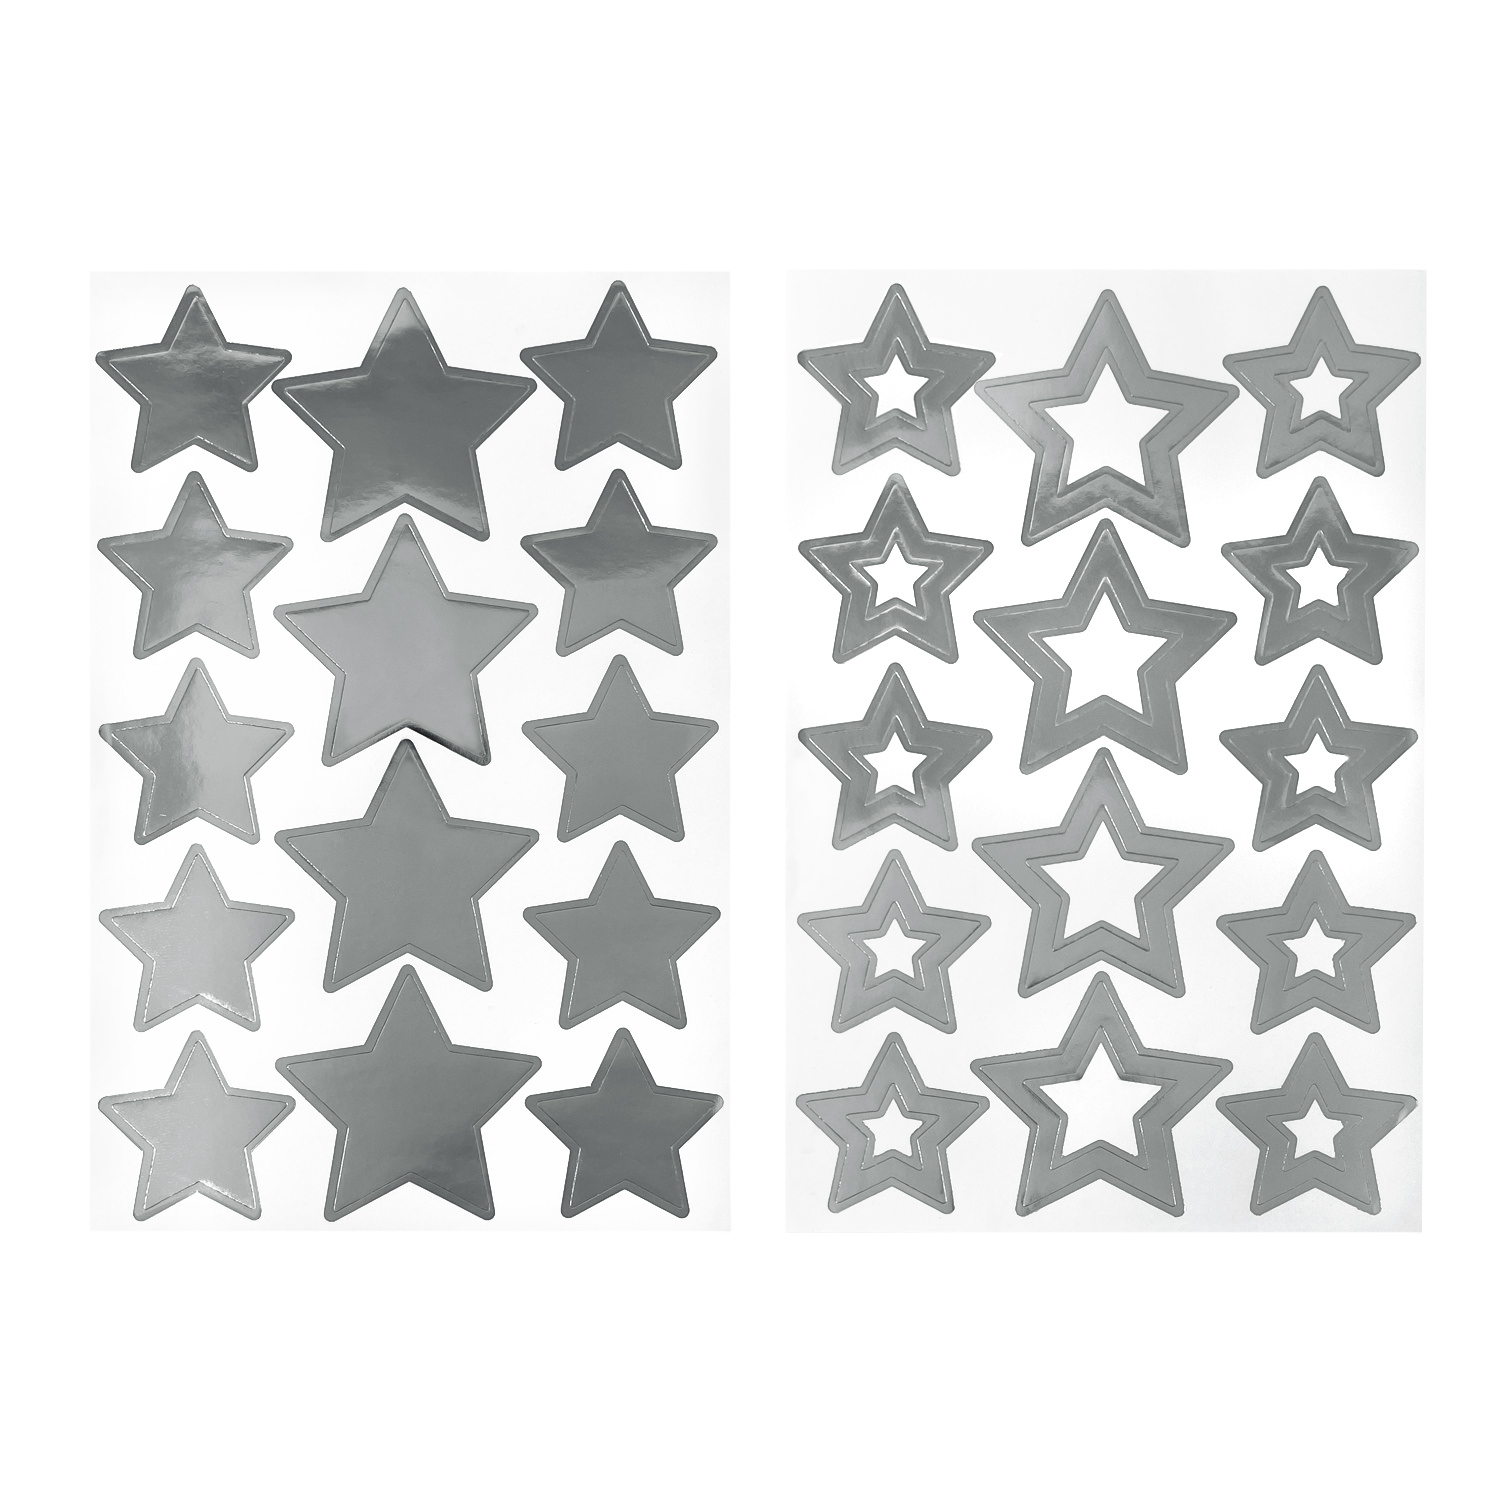 28 Sterne Sticker Stern Aufkleber für Weihnachten Weihnachtsdeko